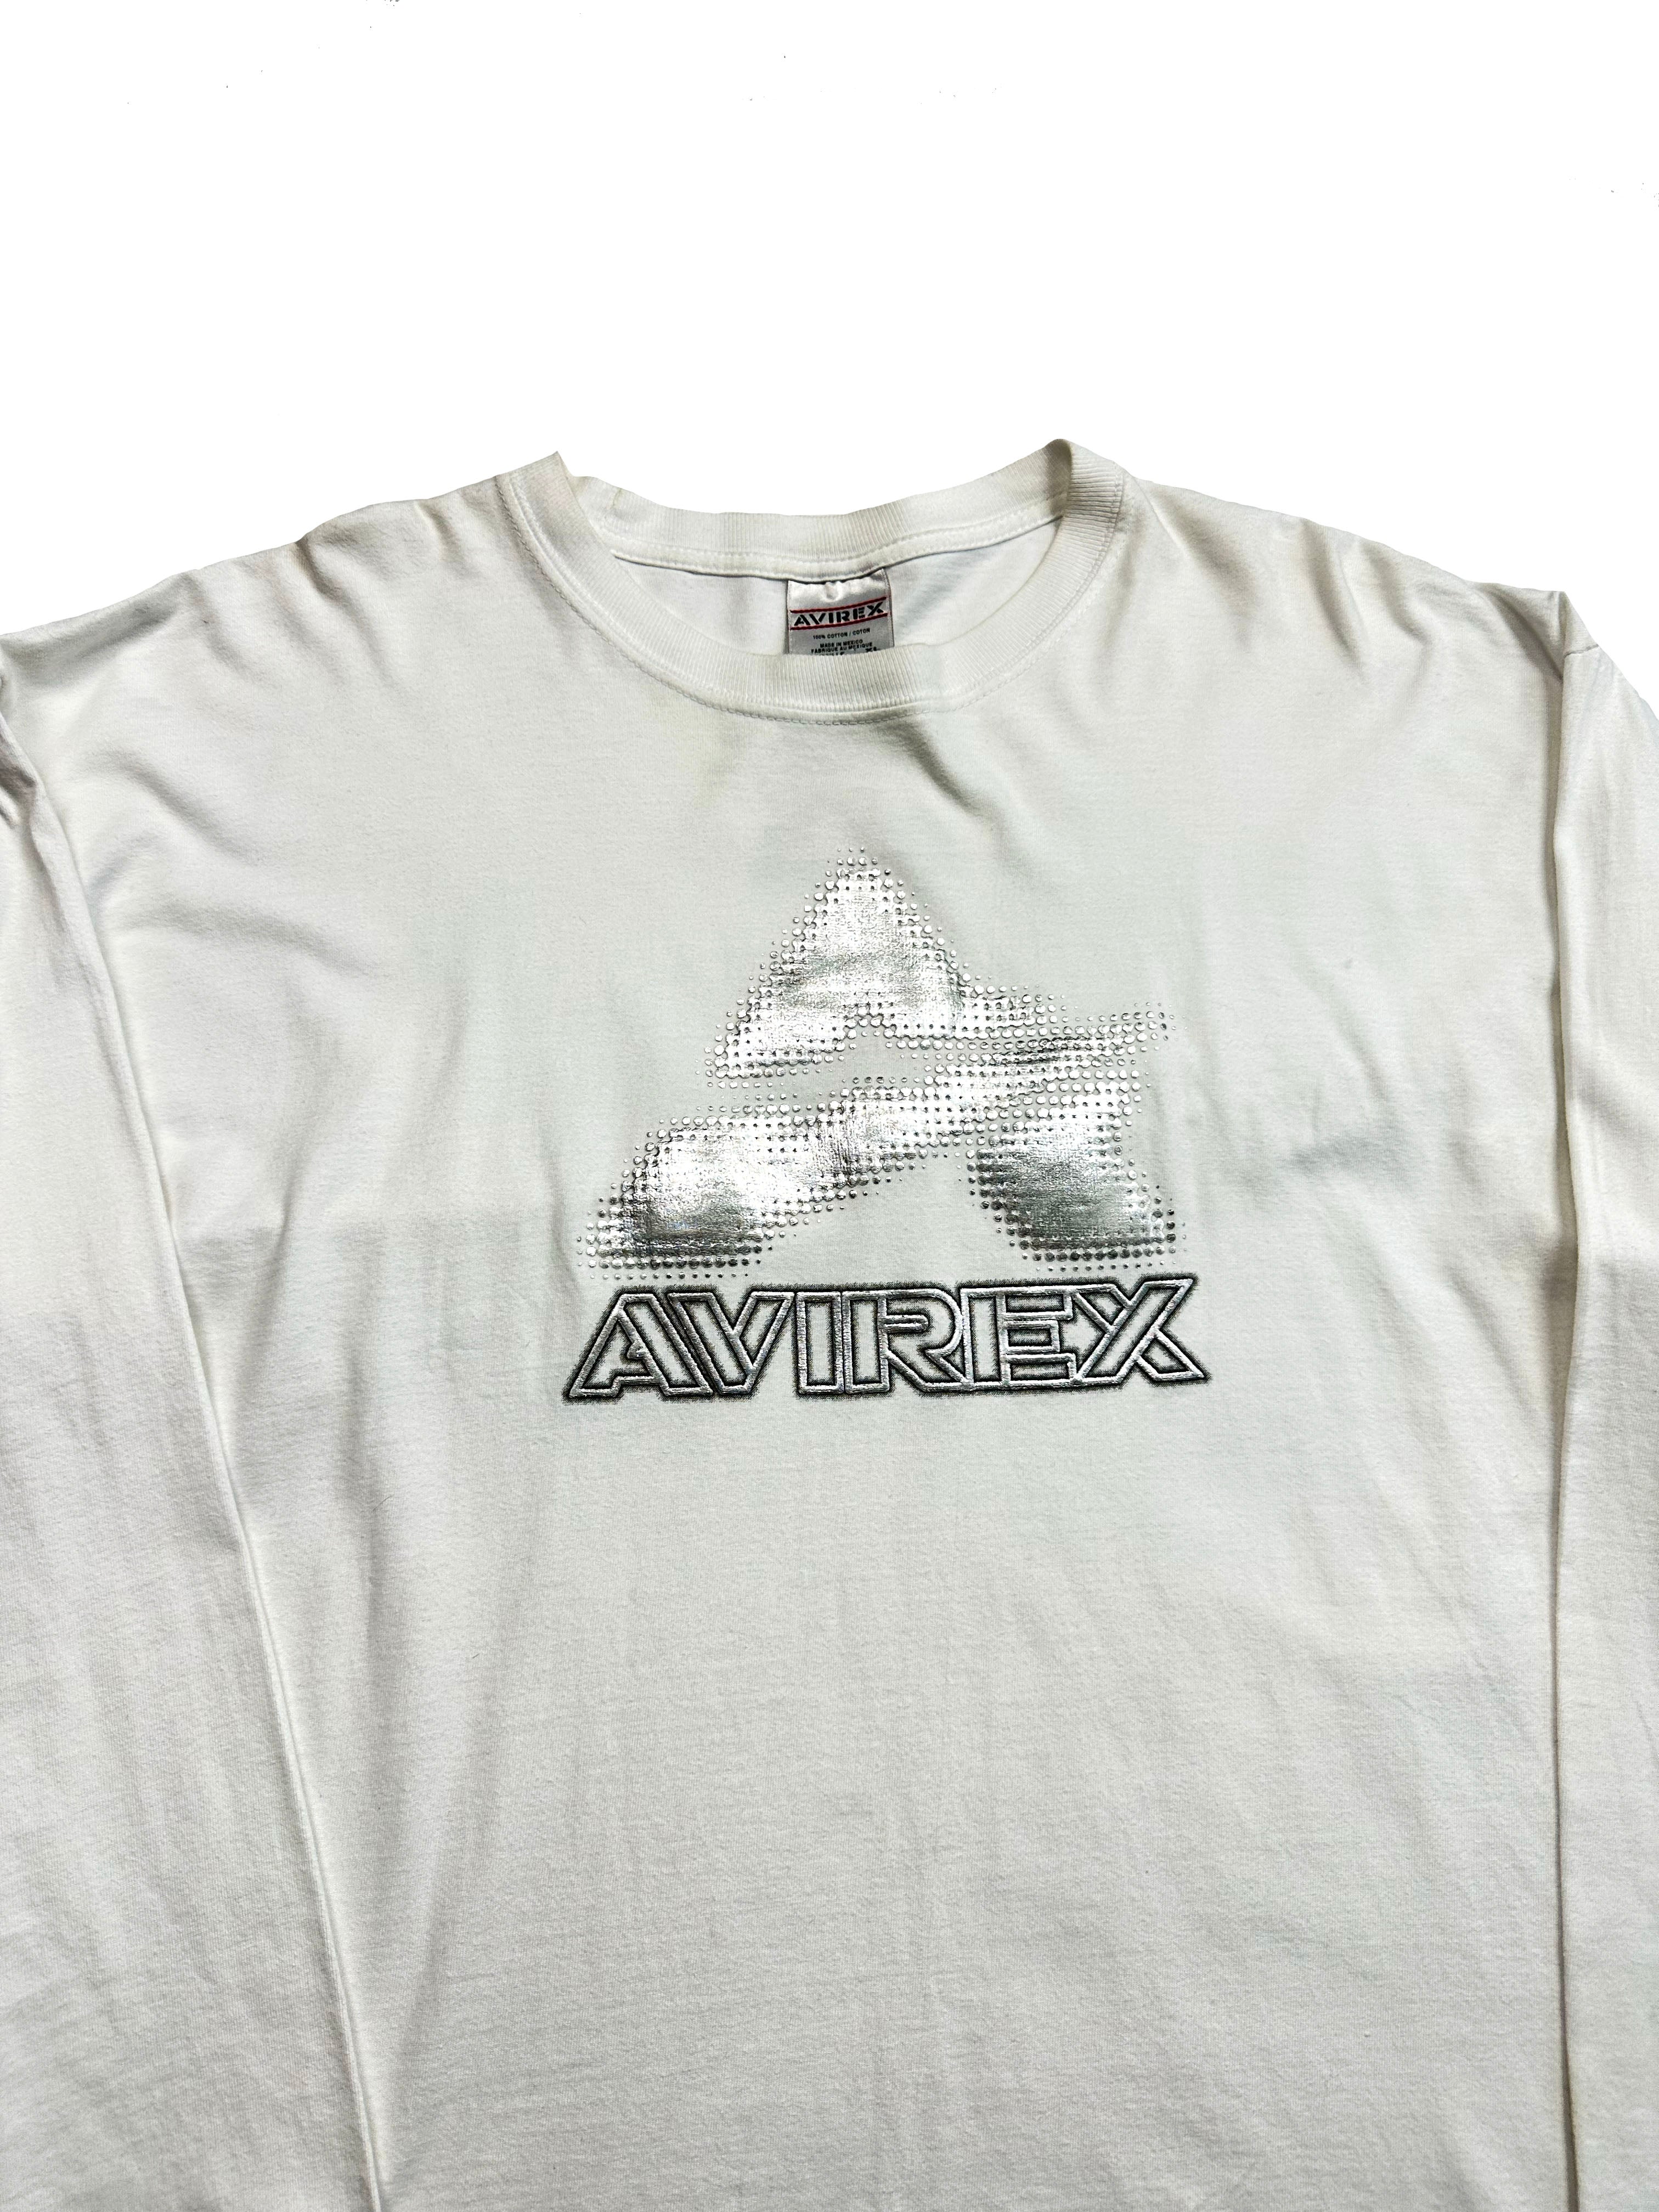 Avirex White Long Sleeve T-shirt 90's